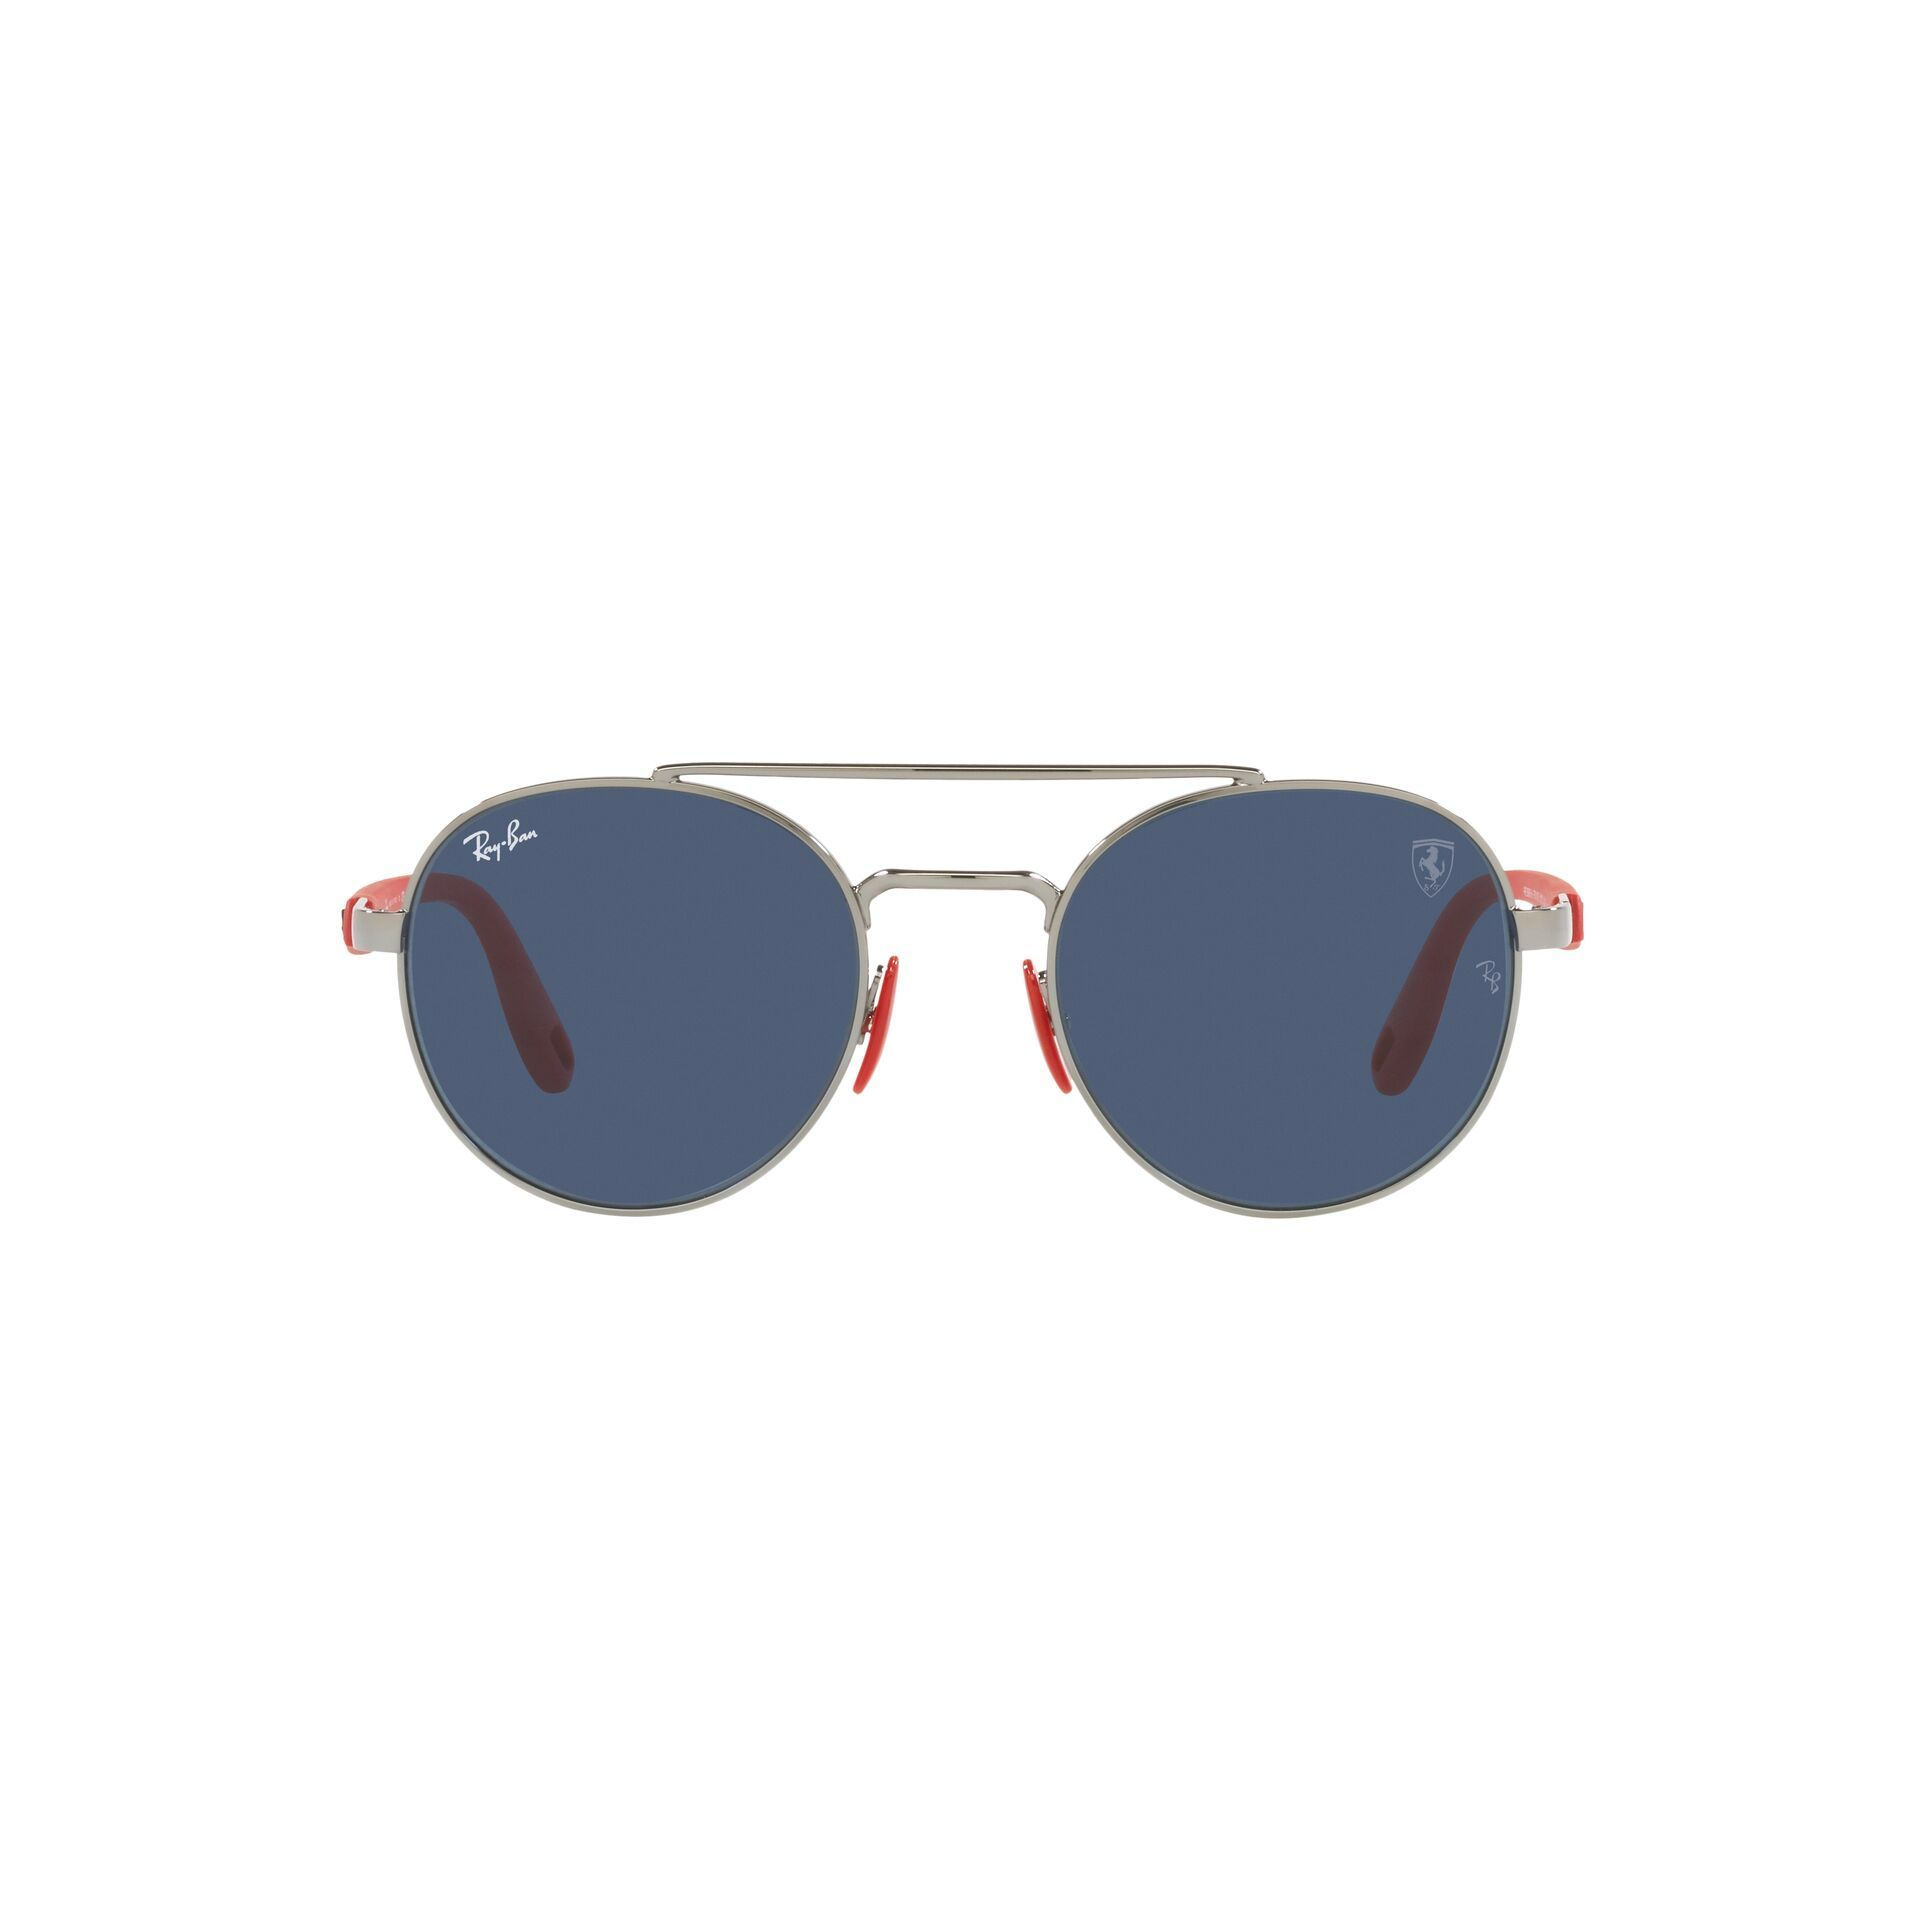 RB3696M  - Sunglasses F00180 - size 51